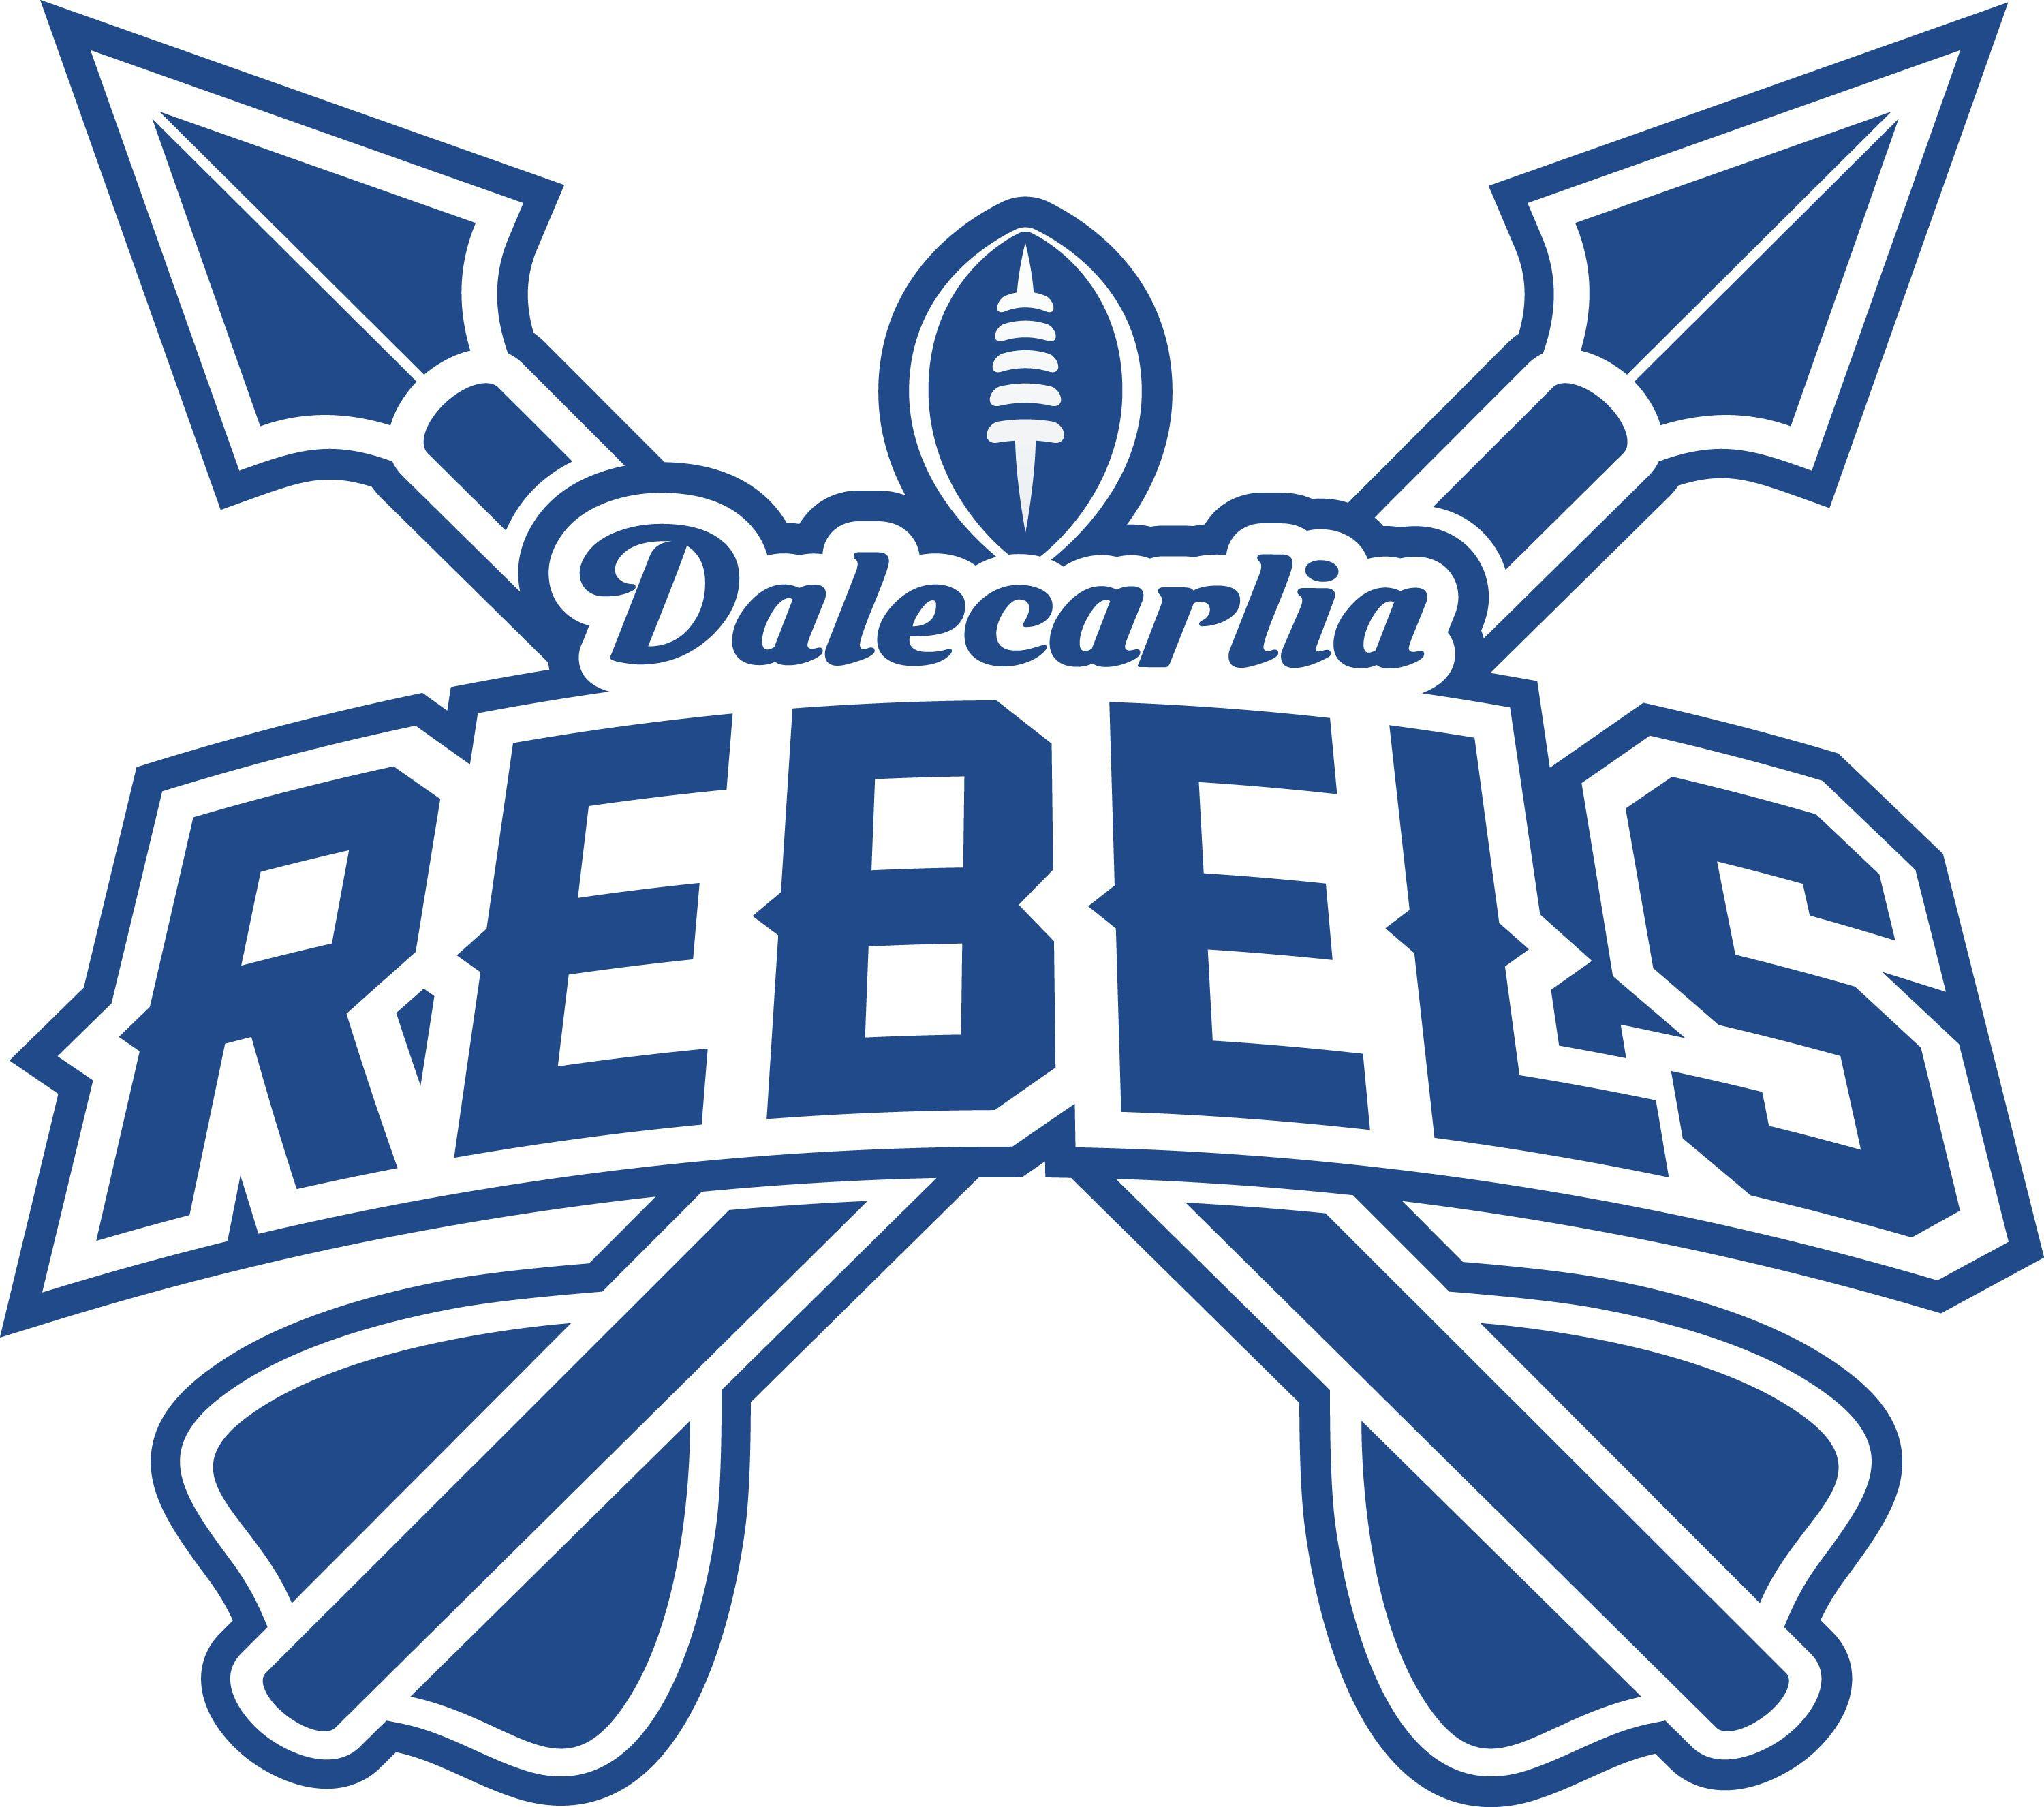 Rebels Logo - File:Dalecarlia Rebels LOGO.jpg - Wikimedia Commons